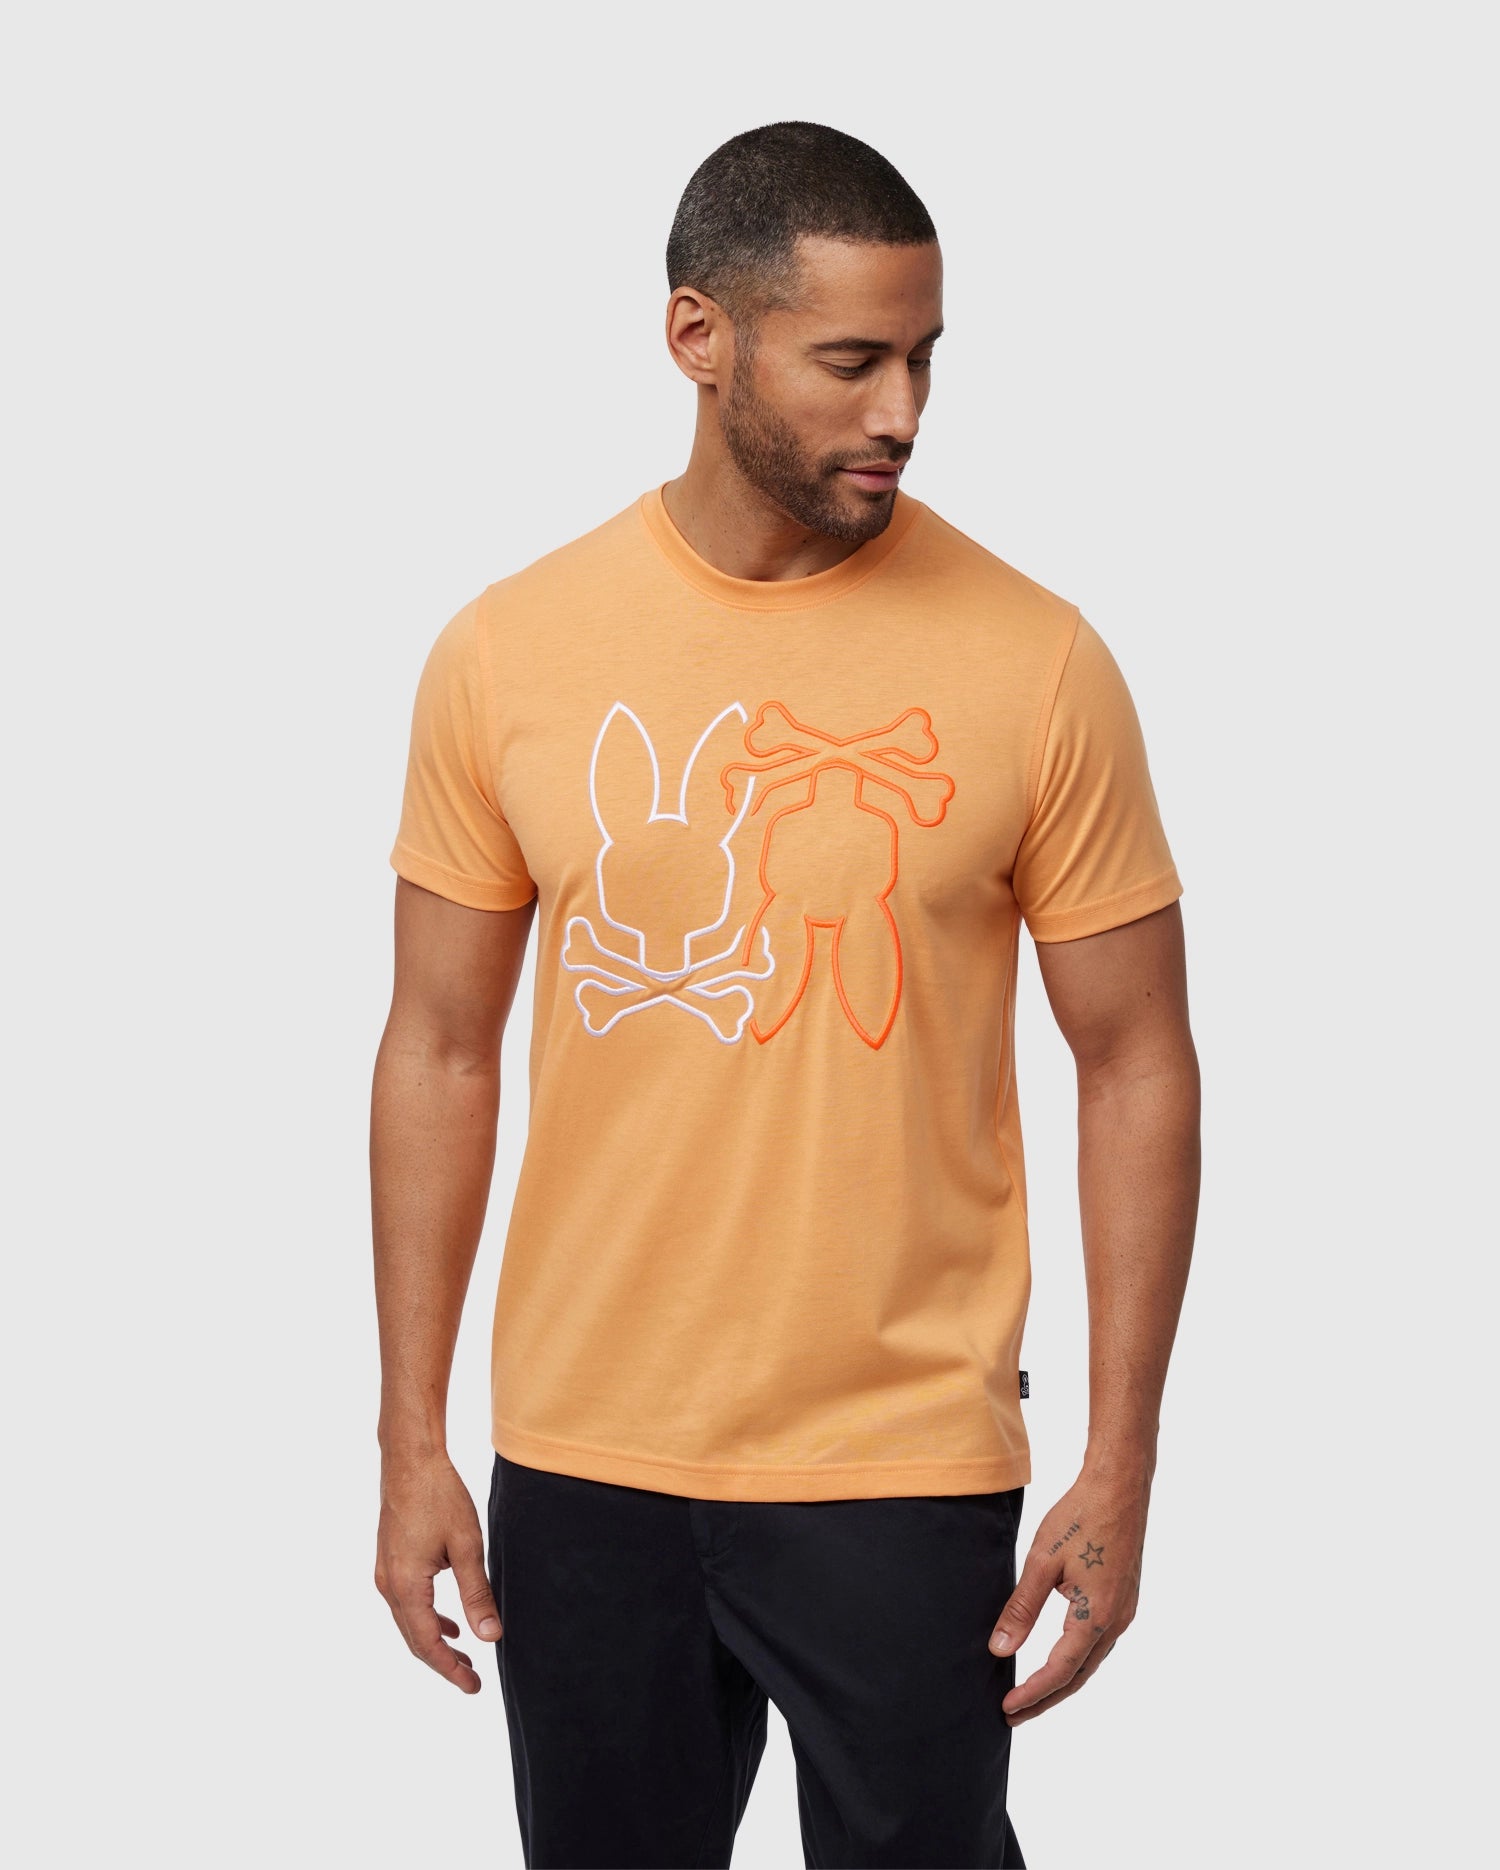 Olymp T-shirt V-Neck Nude 080412-24 order online